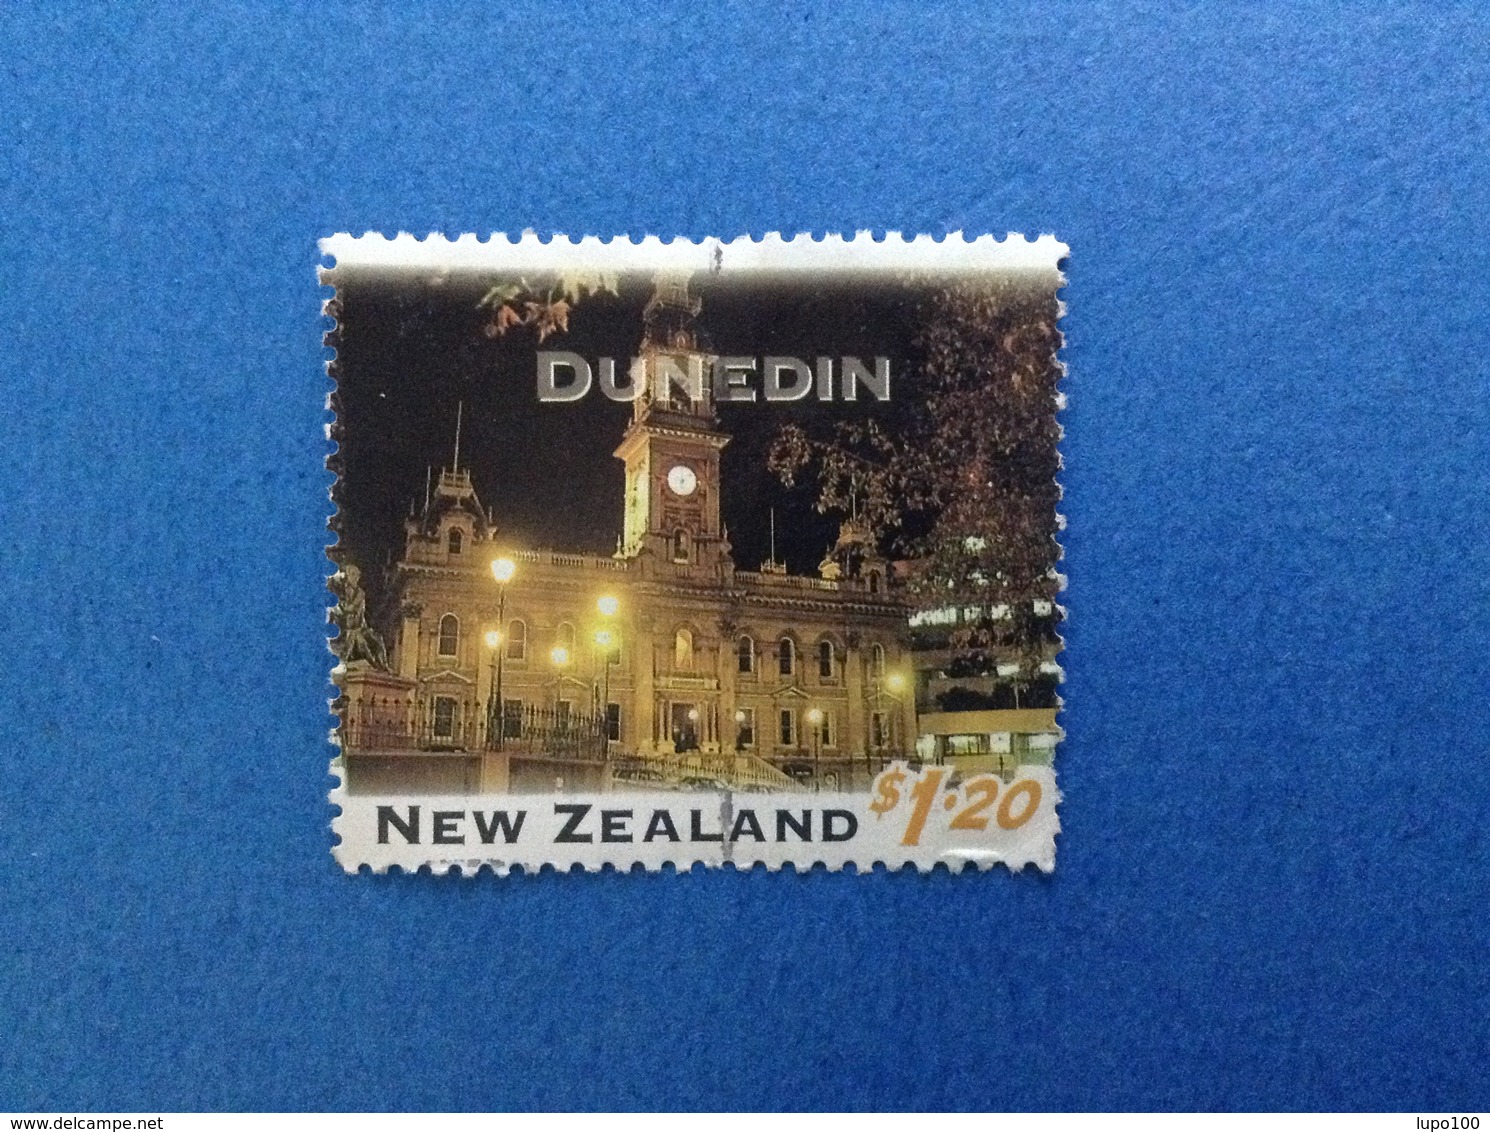 NUOVA ZELANDA NEW ZEALAND TURISTICA CITTA' DUNEDIN $ 1.20 FRANCOBOLLO USATO STAMP USED - Usati